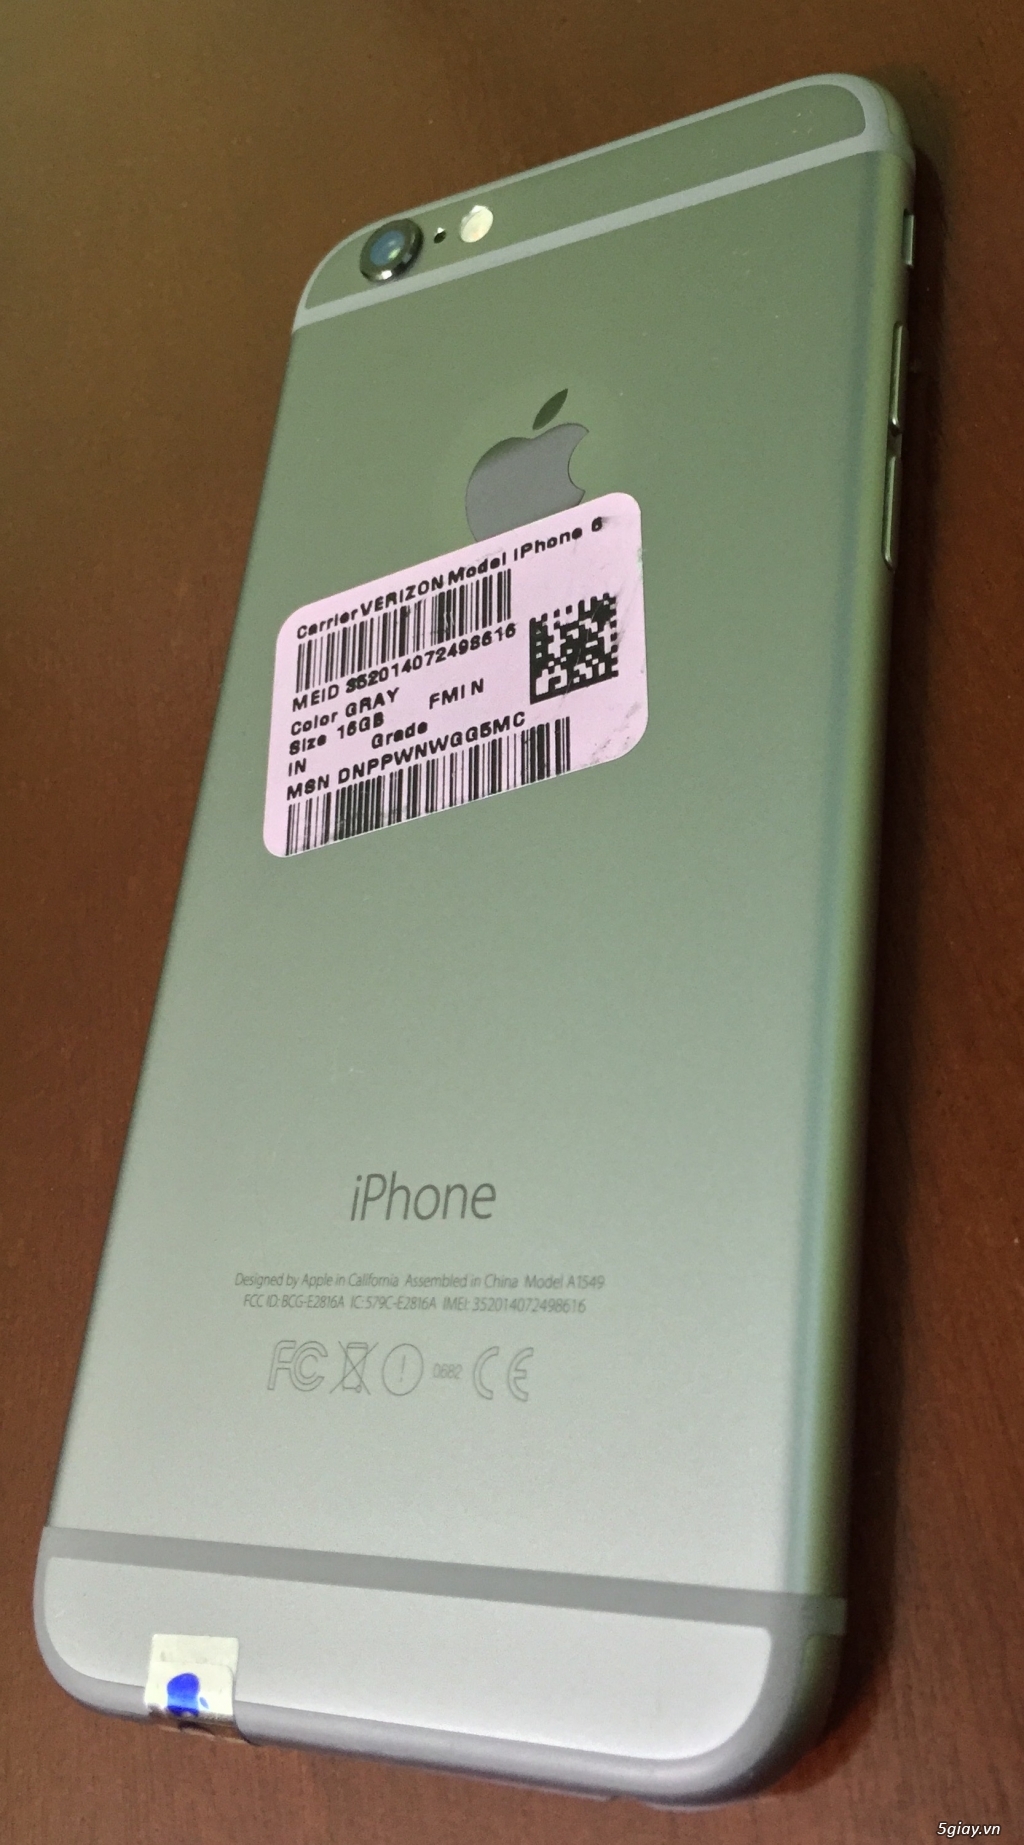 iPhone 6 16Gb,Chính hãng,Bảo mật vân tay,Quốc tế. - 4